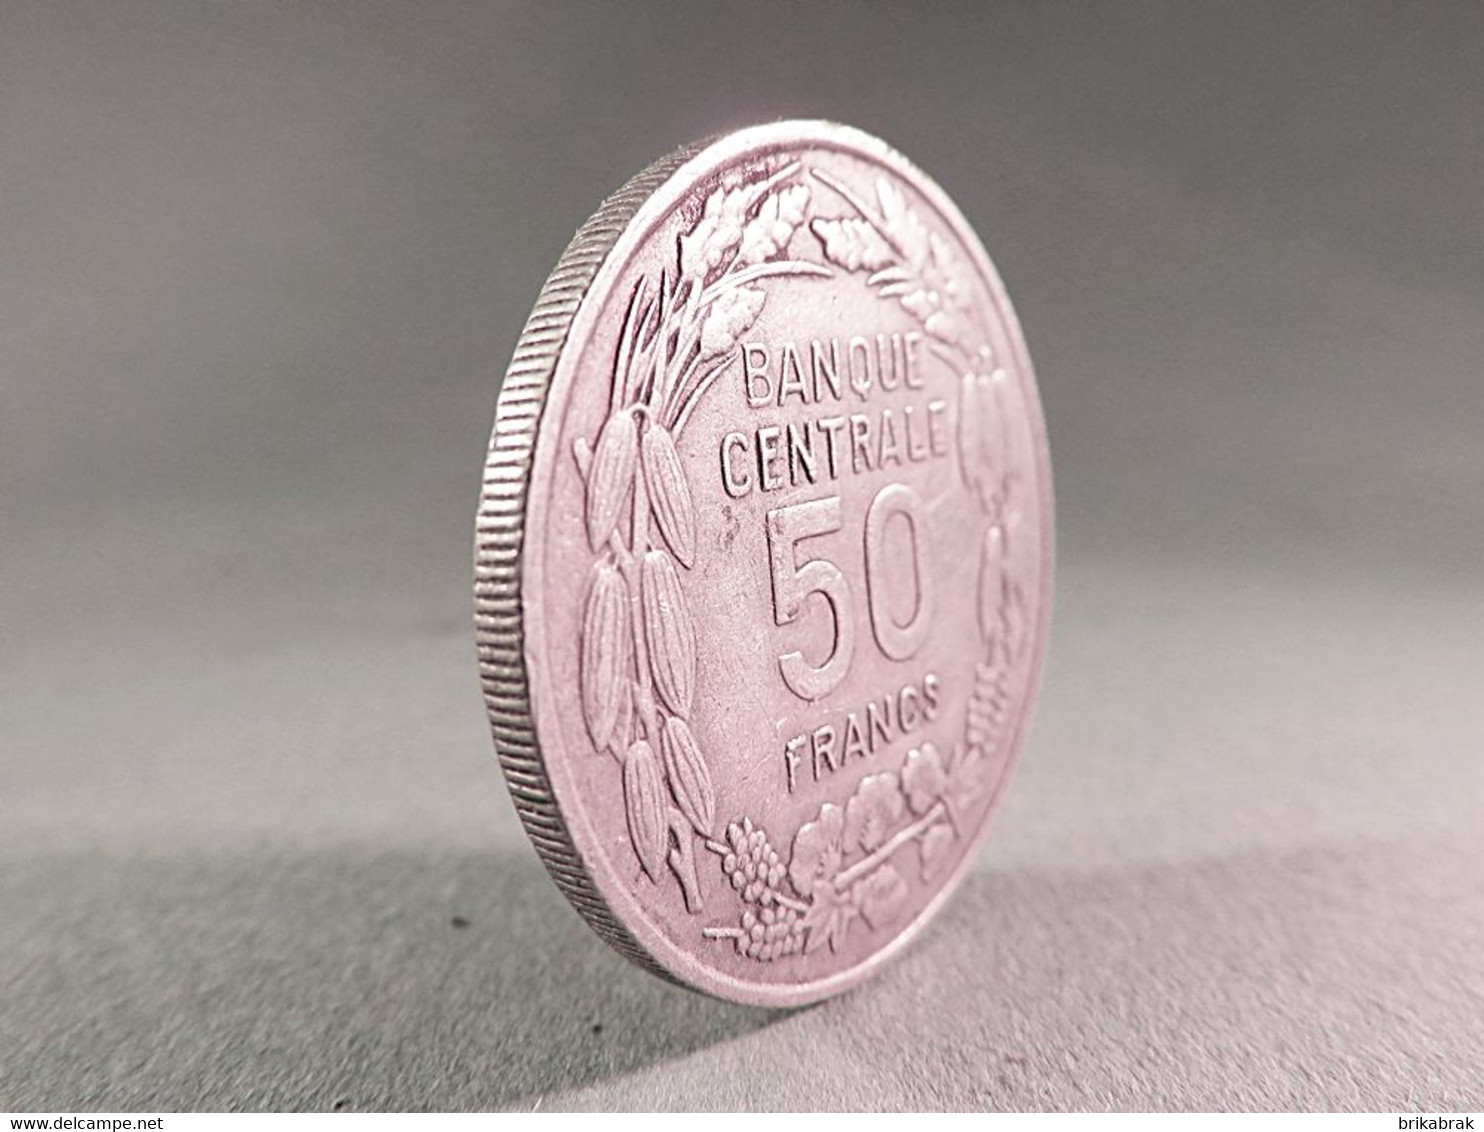 PIECE 50 FRANCS CAMEROUN 1960 - Monnaie Afrique Bazor